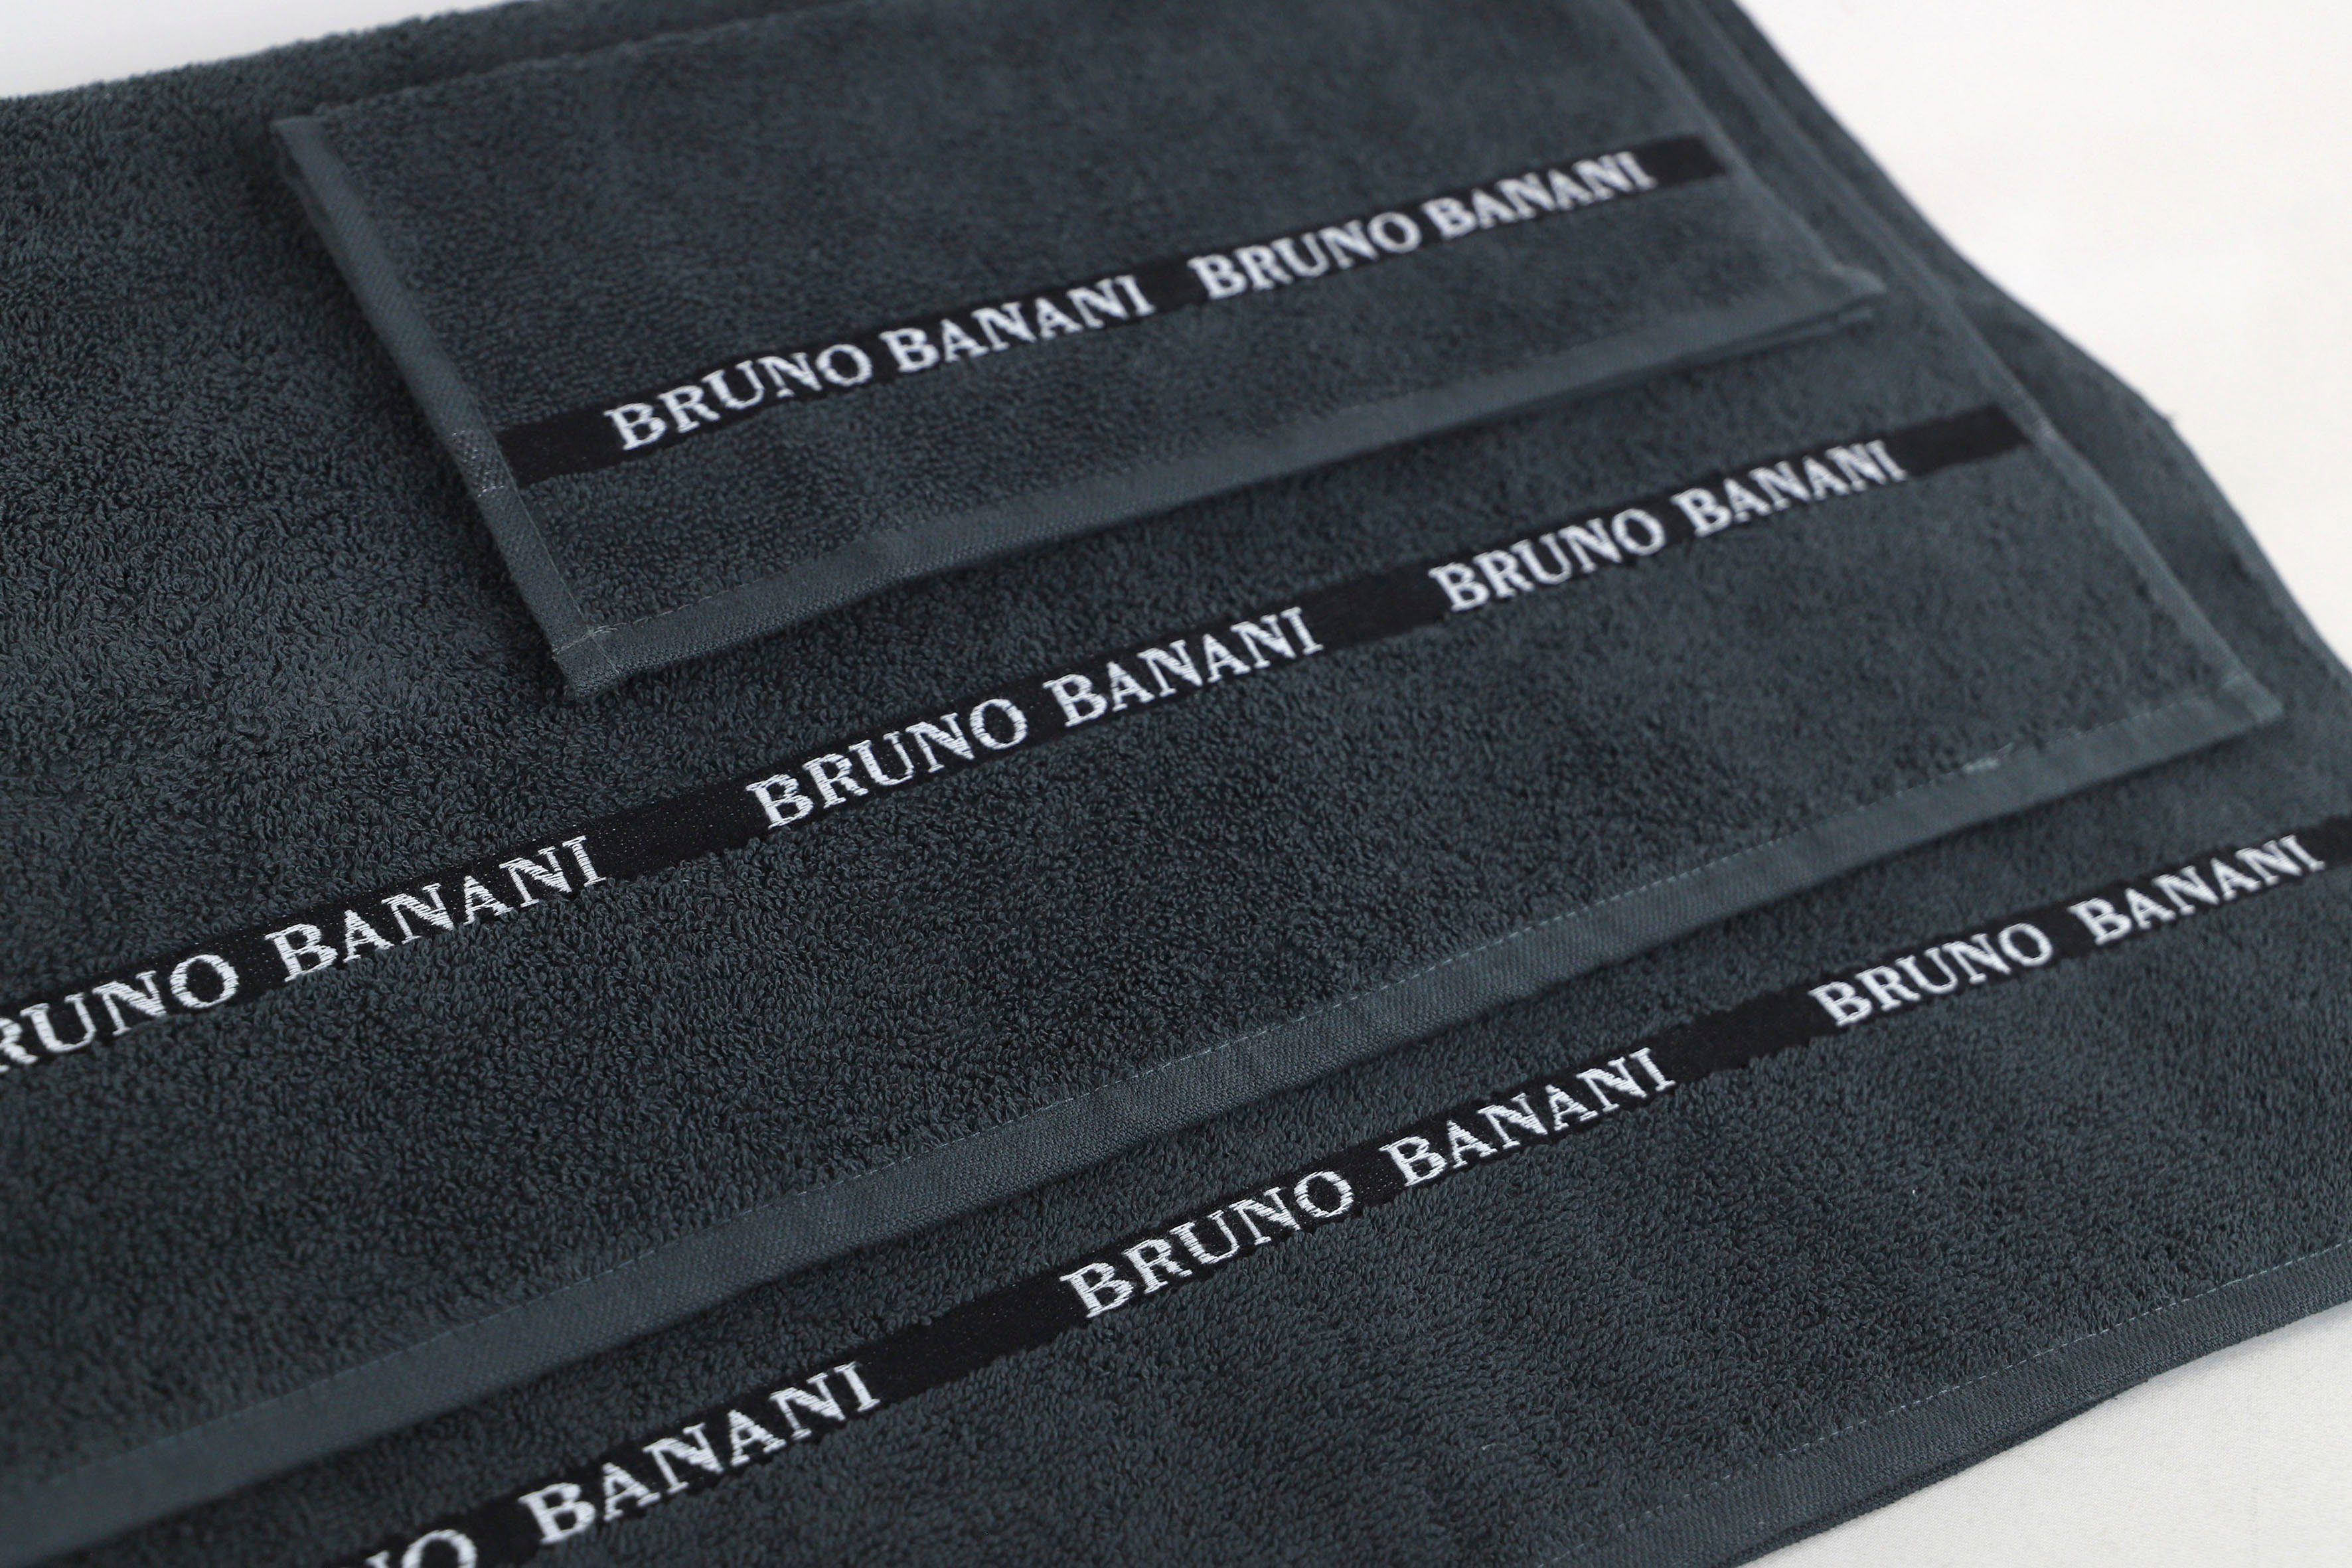 Bruno Banani Handtuch Set Danny, Logostreifen, 100% (Set, anthracite mit Walkfrottier, Baumwolle aus 6-tlg), Handtuch-Set einfarbiges